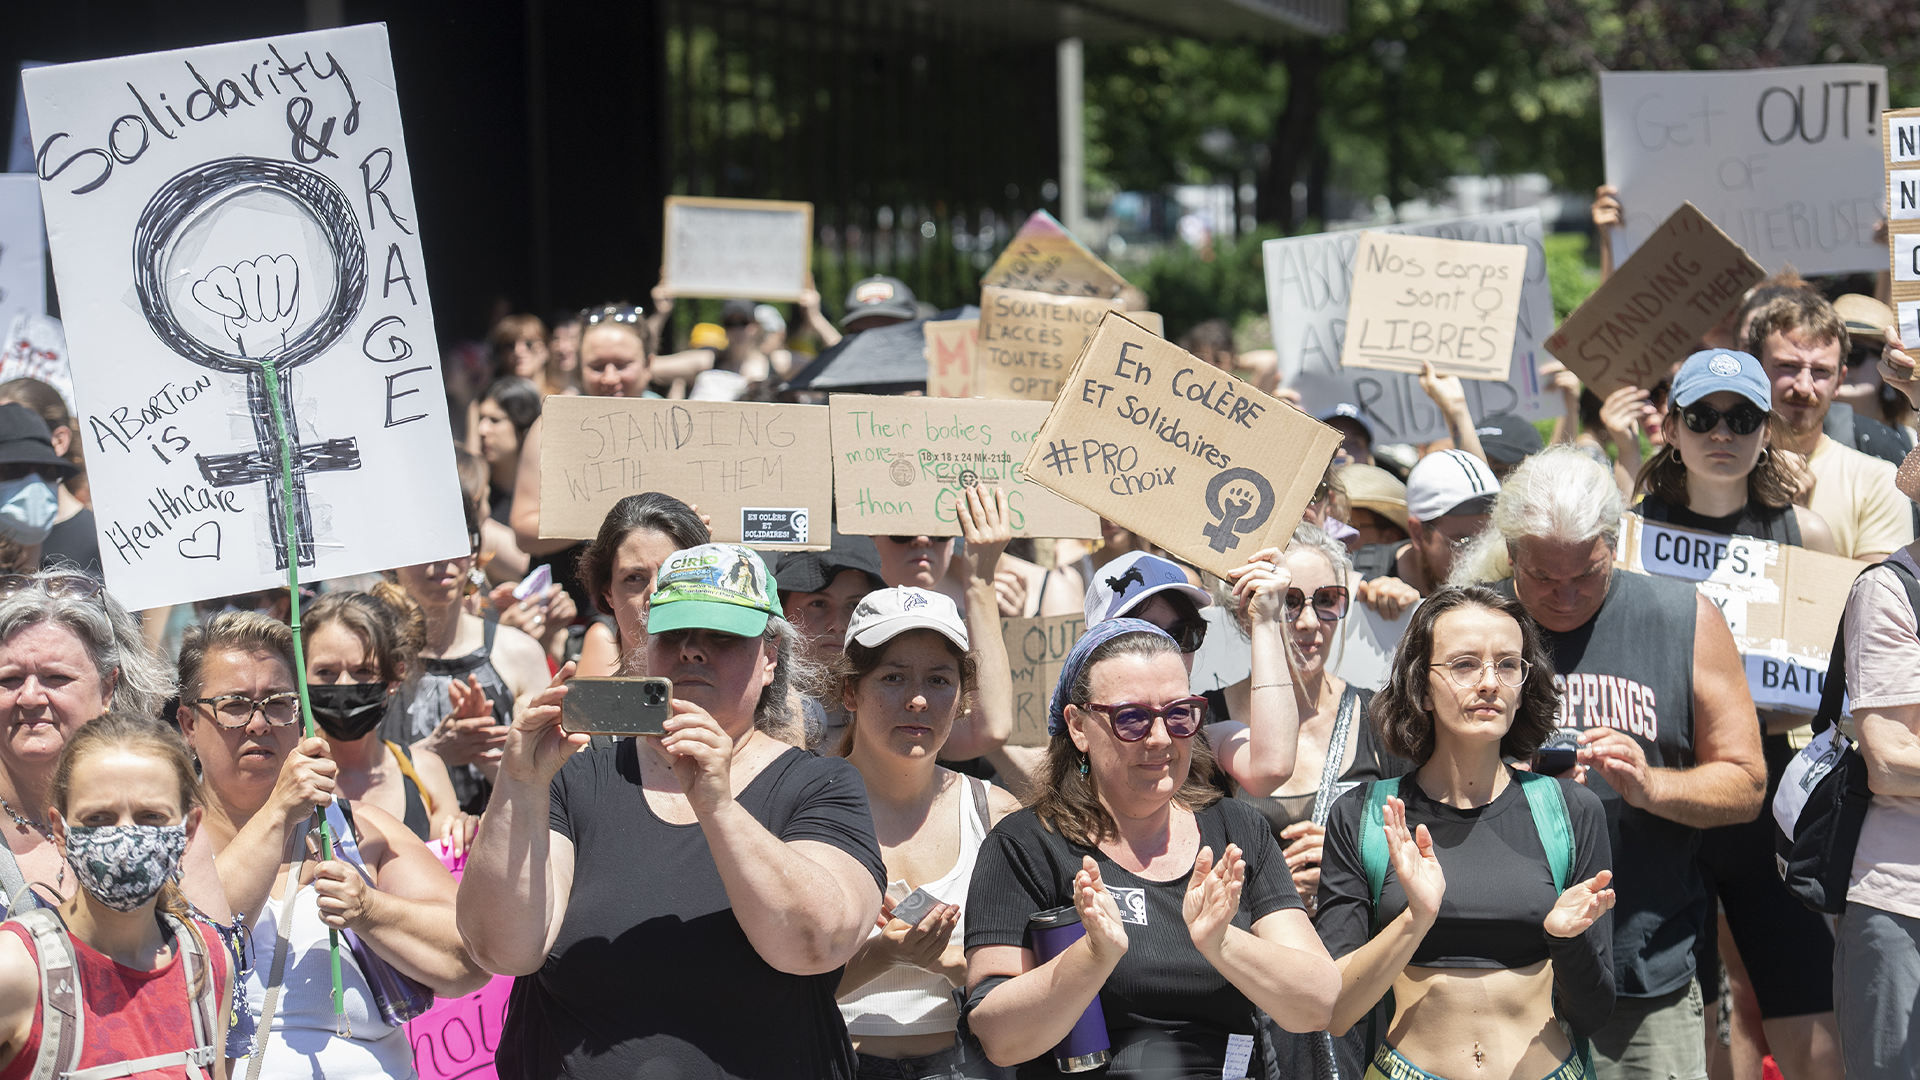 Malgré la chaleur accablante, de nombreuses personnes étaient devant le Palais de Justice, à Montréal, brandissant des pancartes avec des inscriptions telles que «Mon corps, mon choix final bâton» ou «Autonomie pour tous».